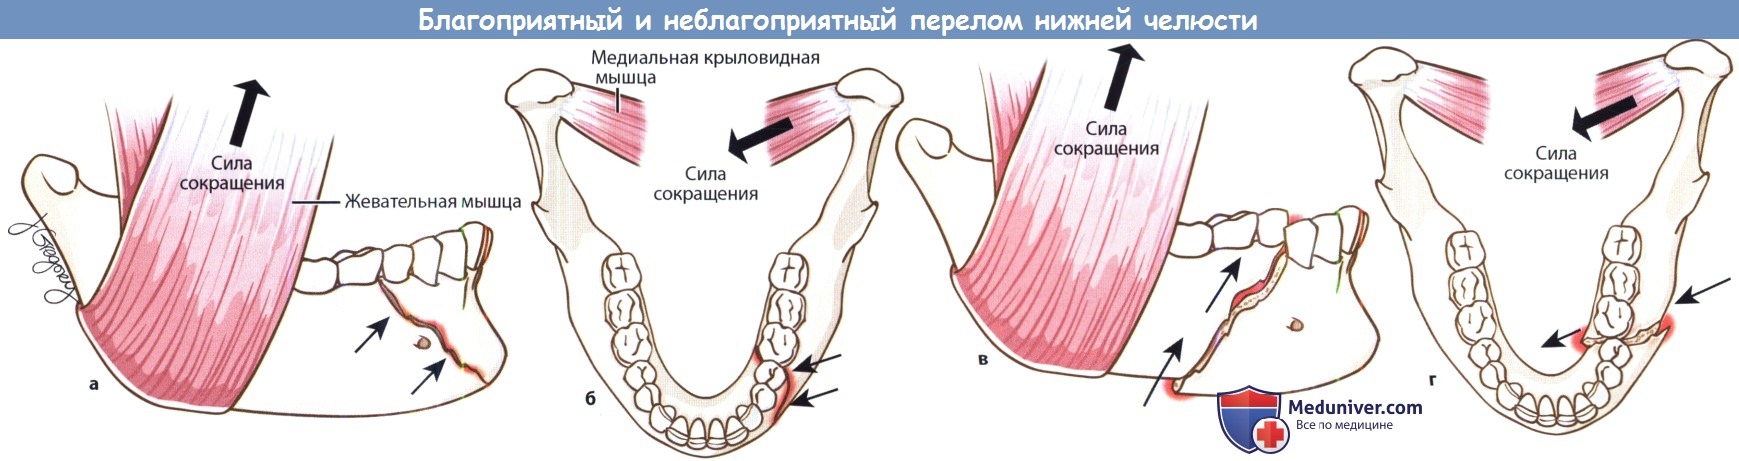 Благоприятный и неблагоприятный переломы нижней челюсти